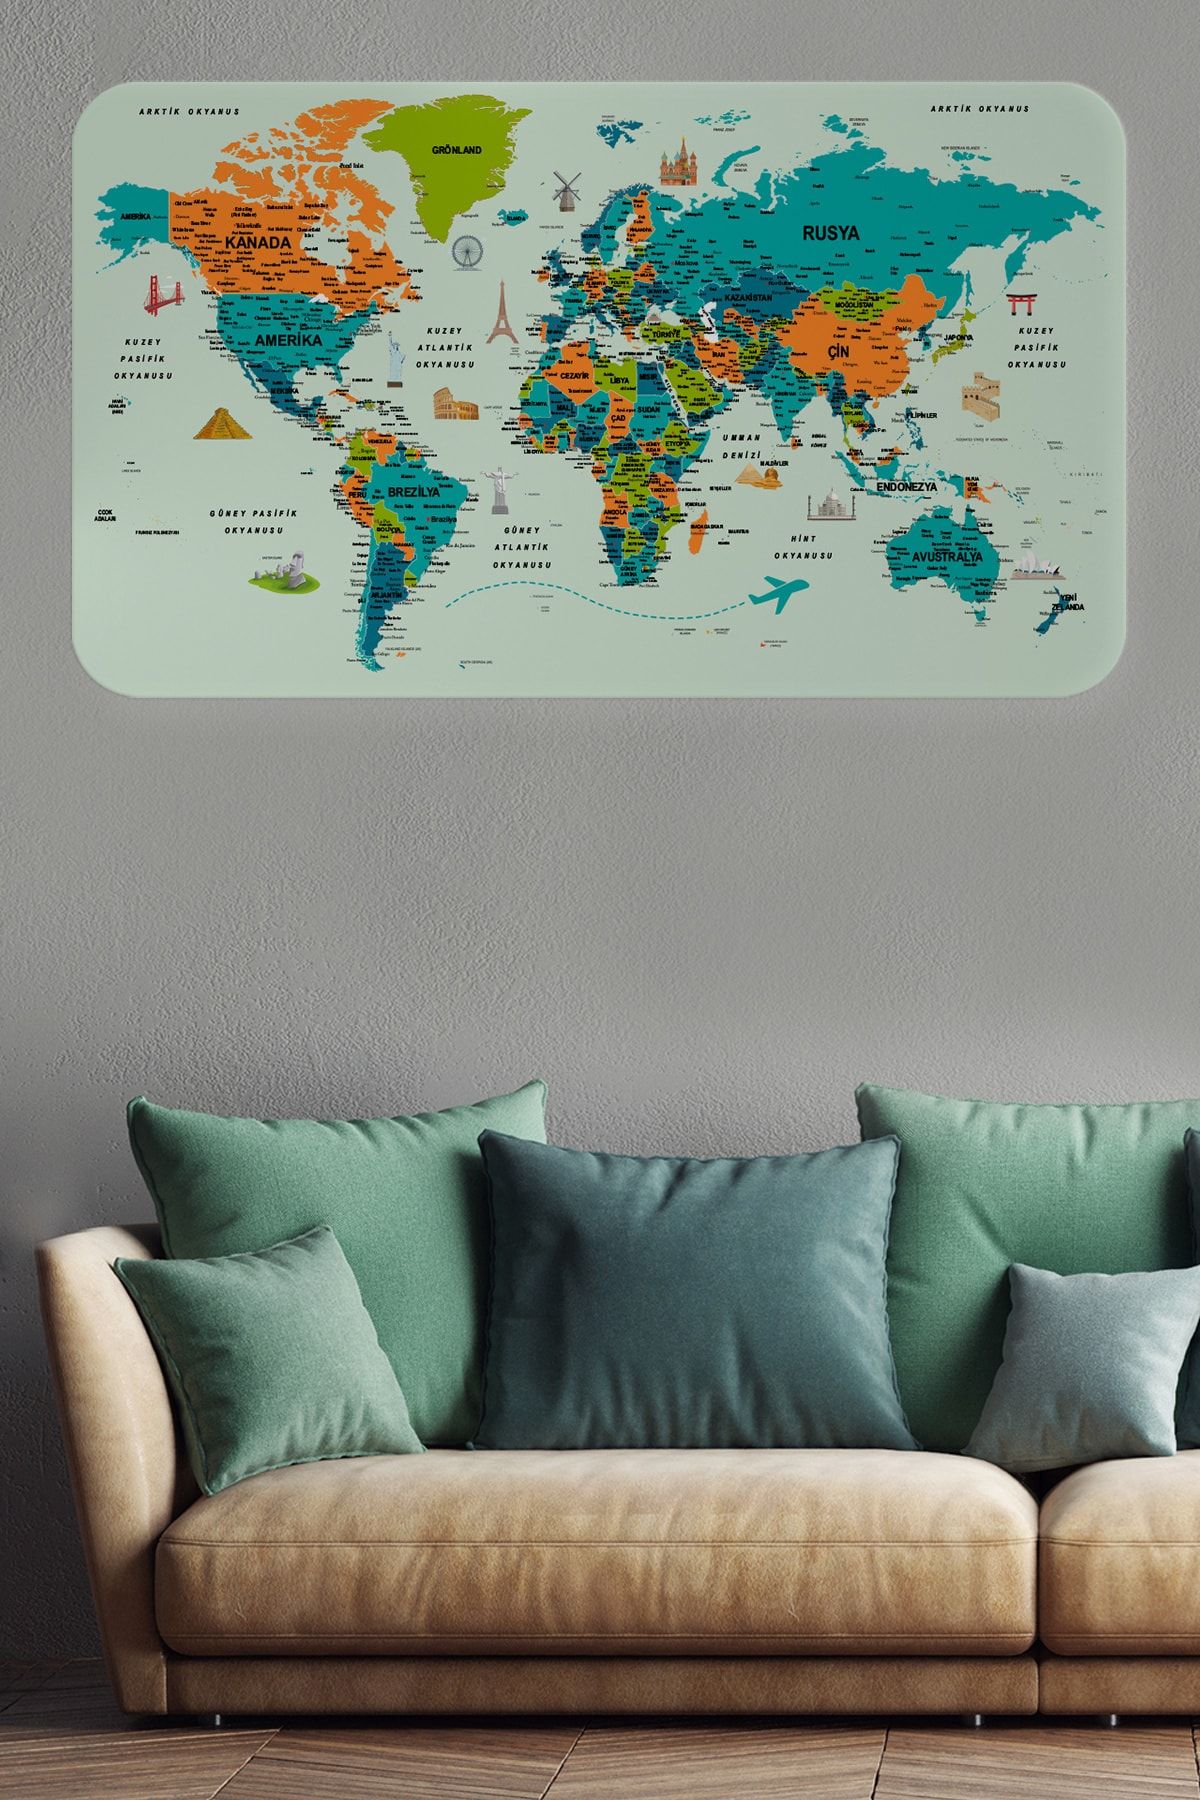 Harita Sepeti Türkçe Eğitici Ülke Ve Başkent Detaylı Atlası Dünya Haritası Duvar Sticker